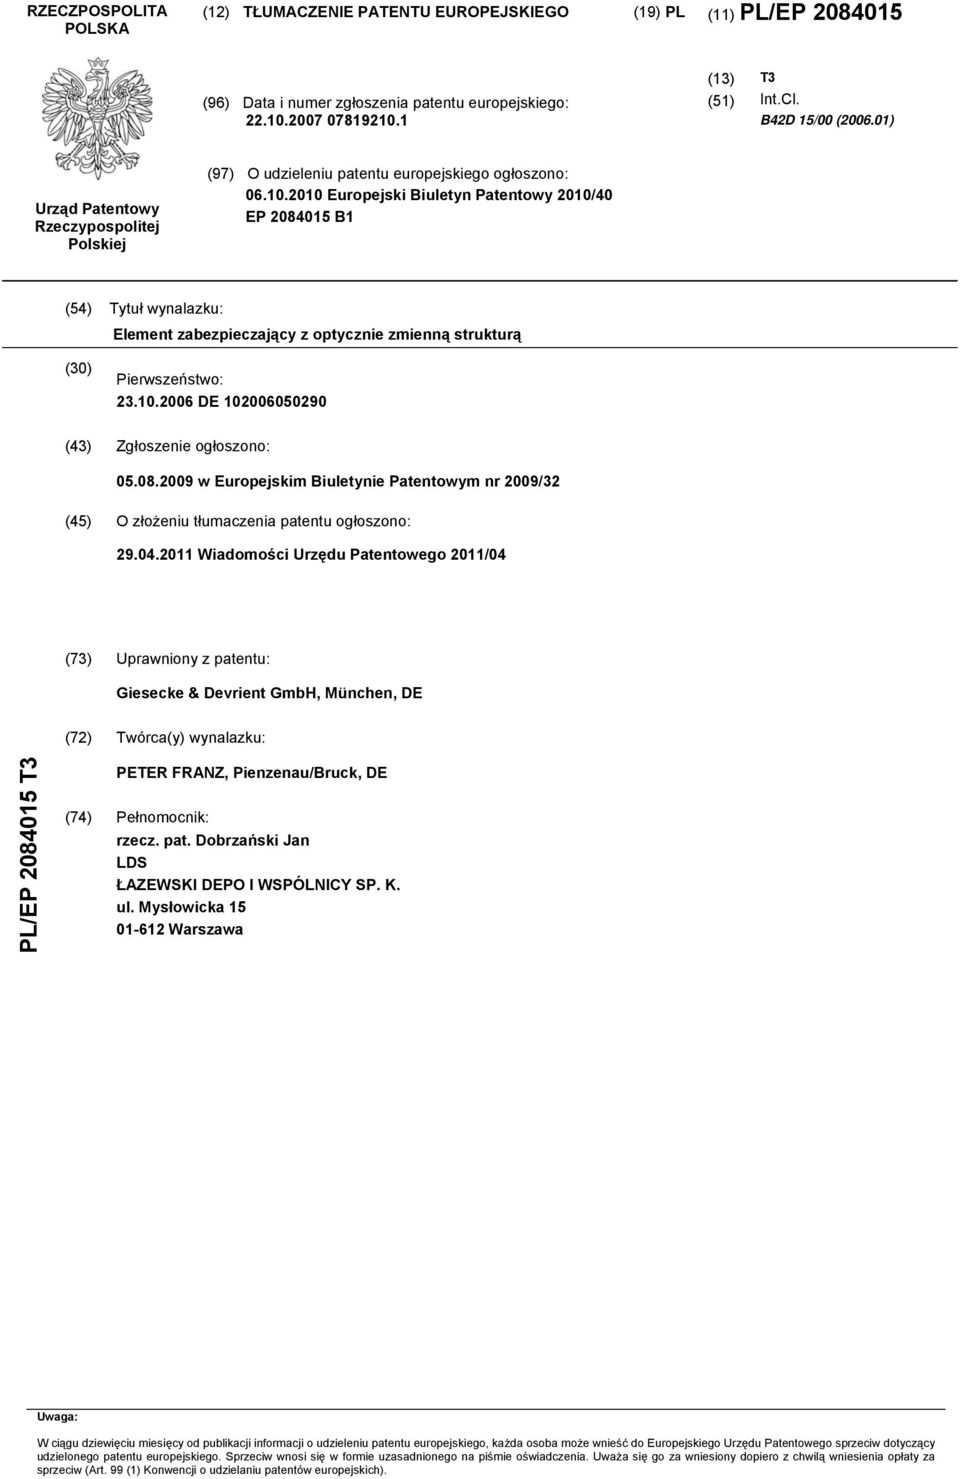 . Europejski Biuletyn Patentowy /40 EP 840 B1 (4) Tytuł wynalazku: Element zabezpieczający z optycznie zmienną strukturą () Pierwszeństwo: 23..06 DE 0600290 (43) Zgłoszenie ogłoszono: 0.08.